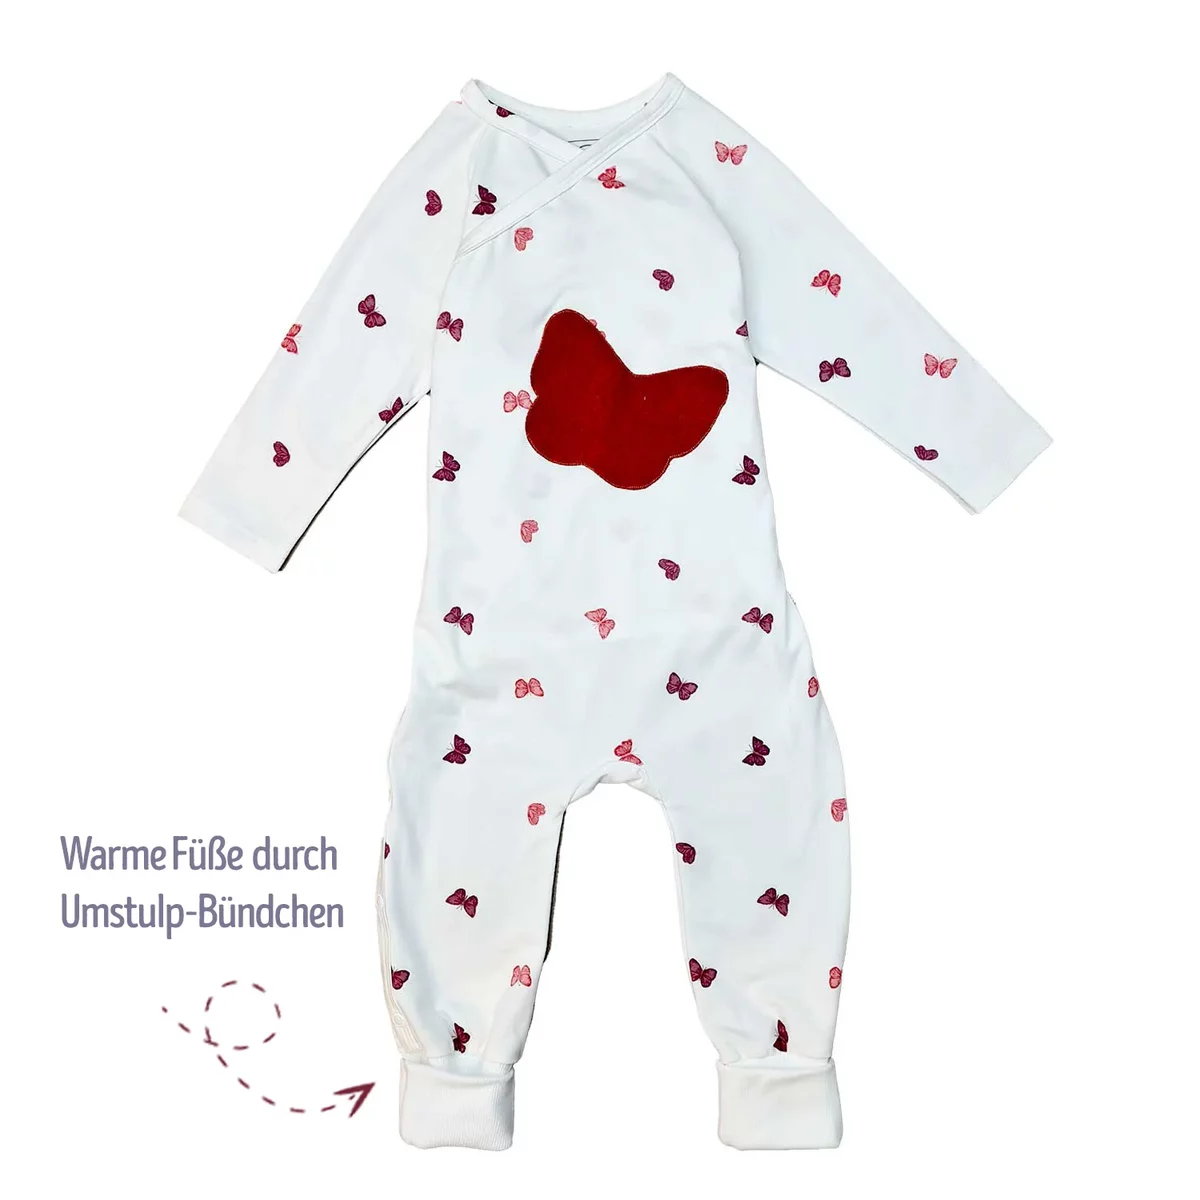 Bequemer Baby-Wickelstrampler Schlafanzug in Weiß mit rotem Herz und zarten Schmetterlingsmustern, aus Bio-Baumwolle, mit praktischen Umstulp-Bündchen für warme Füße.